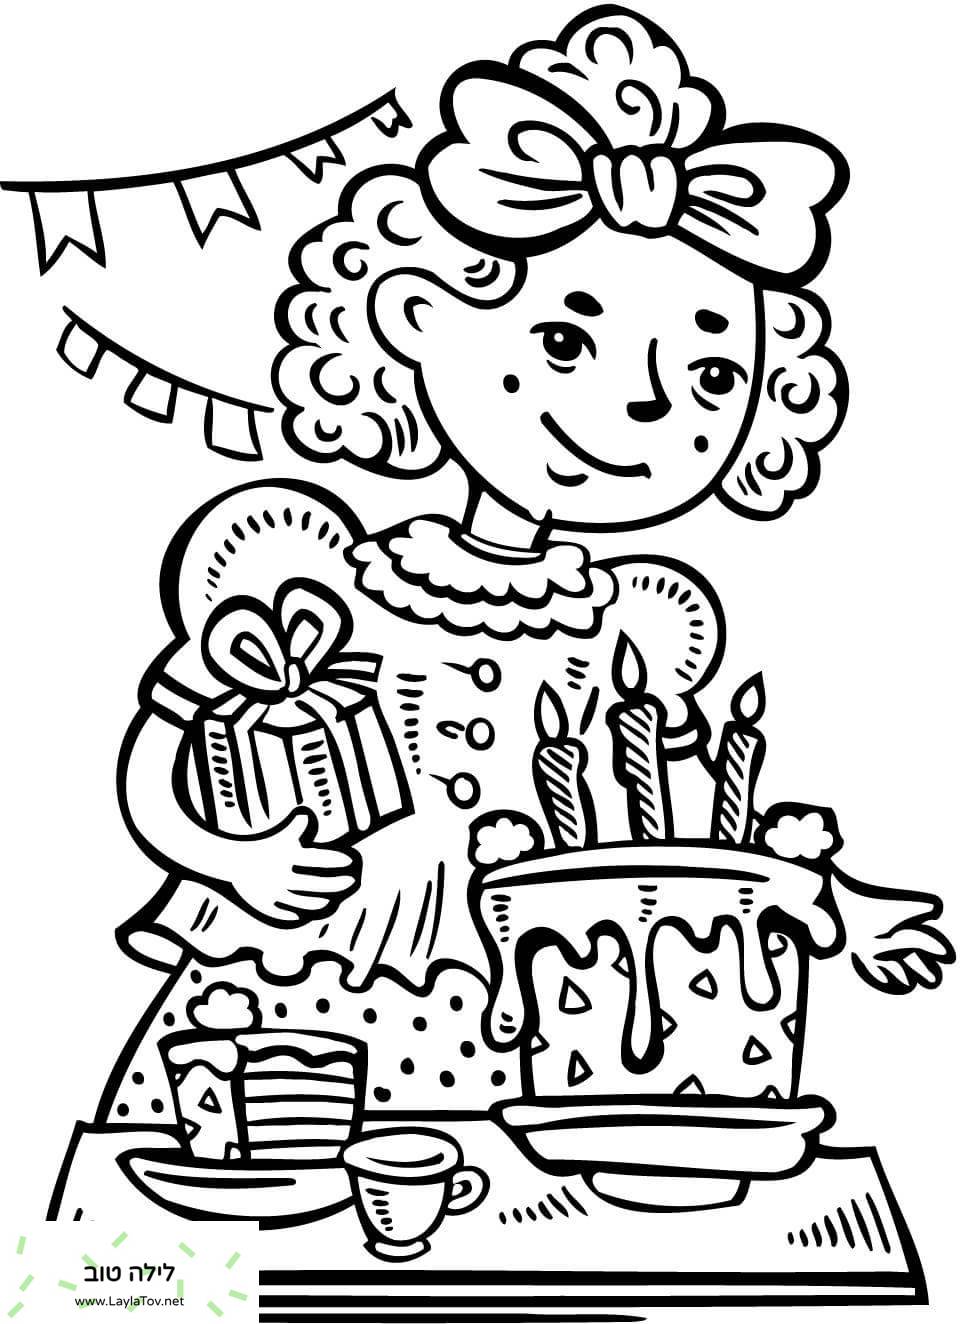 לילדה יש מסיבת יום הולדת